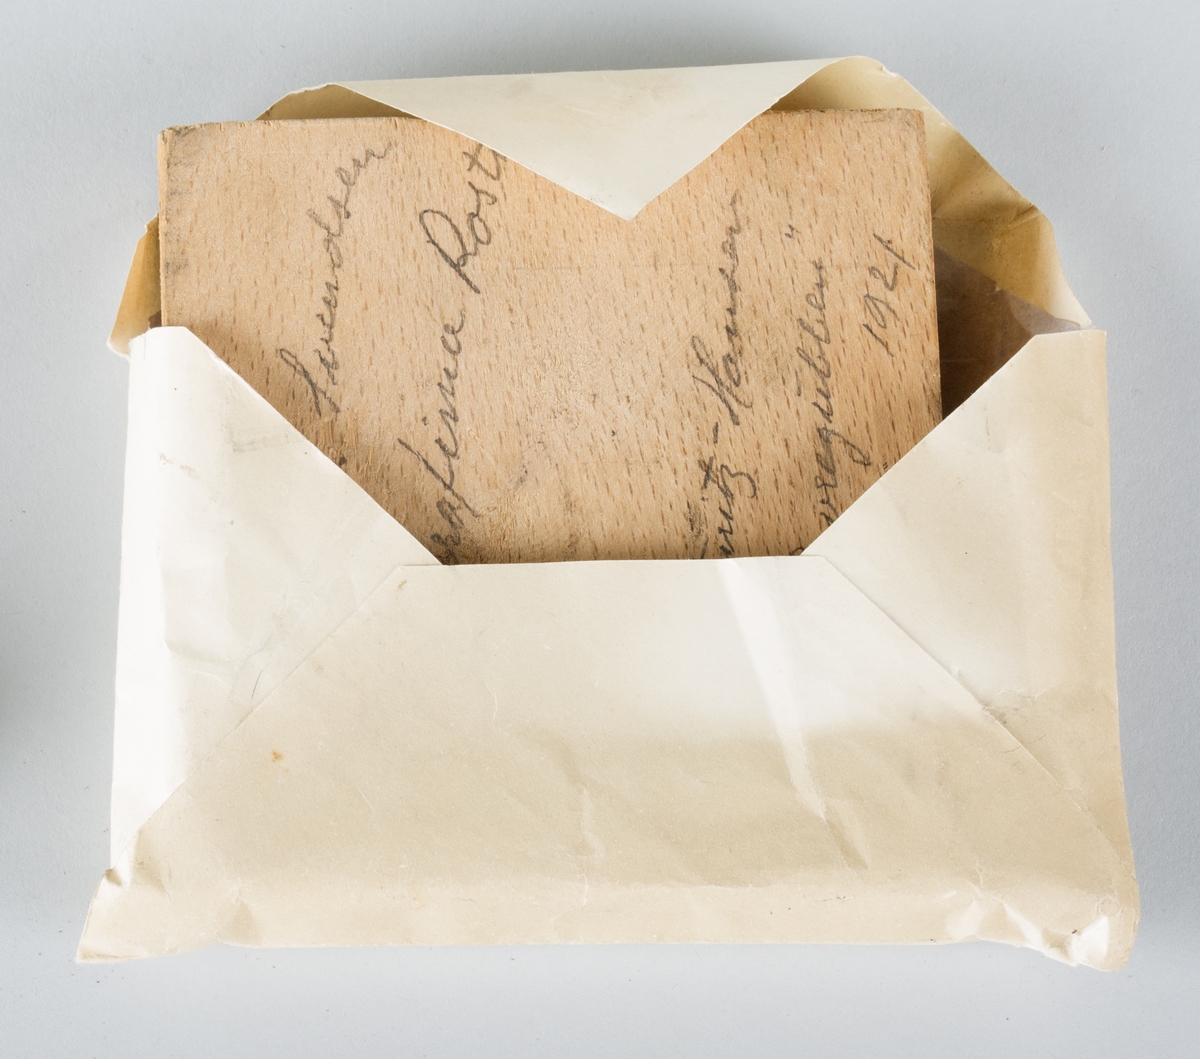 En kvadratisk trykkblokk av tre og metall, oppbevart i konvolutt av papir. 
Klisjéen er gitt i gave, en liten hilsen er påskrevet konvolutten.